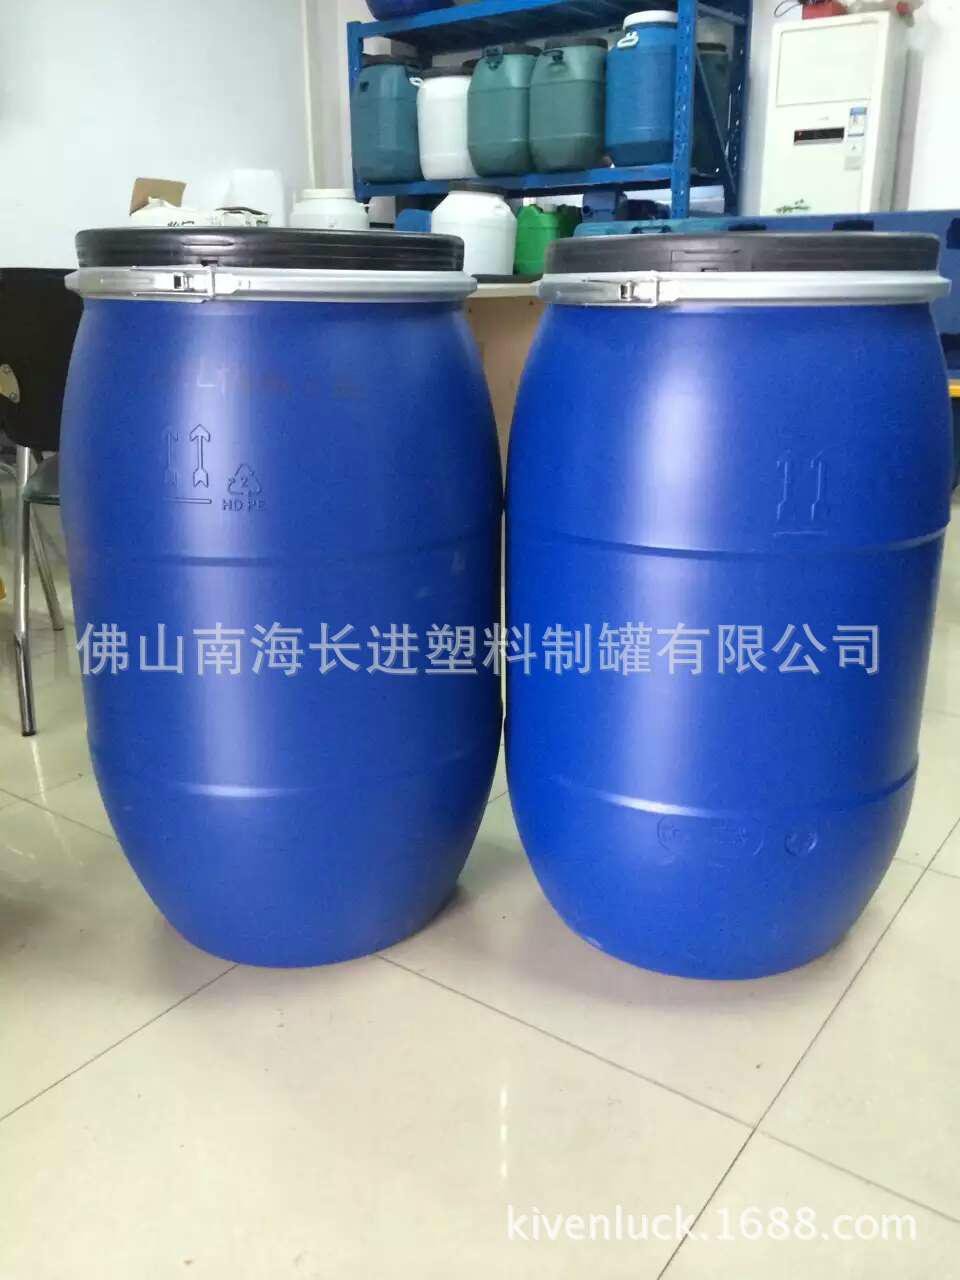 125kg Blue Chemical open barrel 3